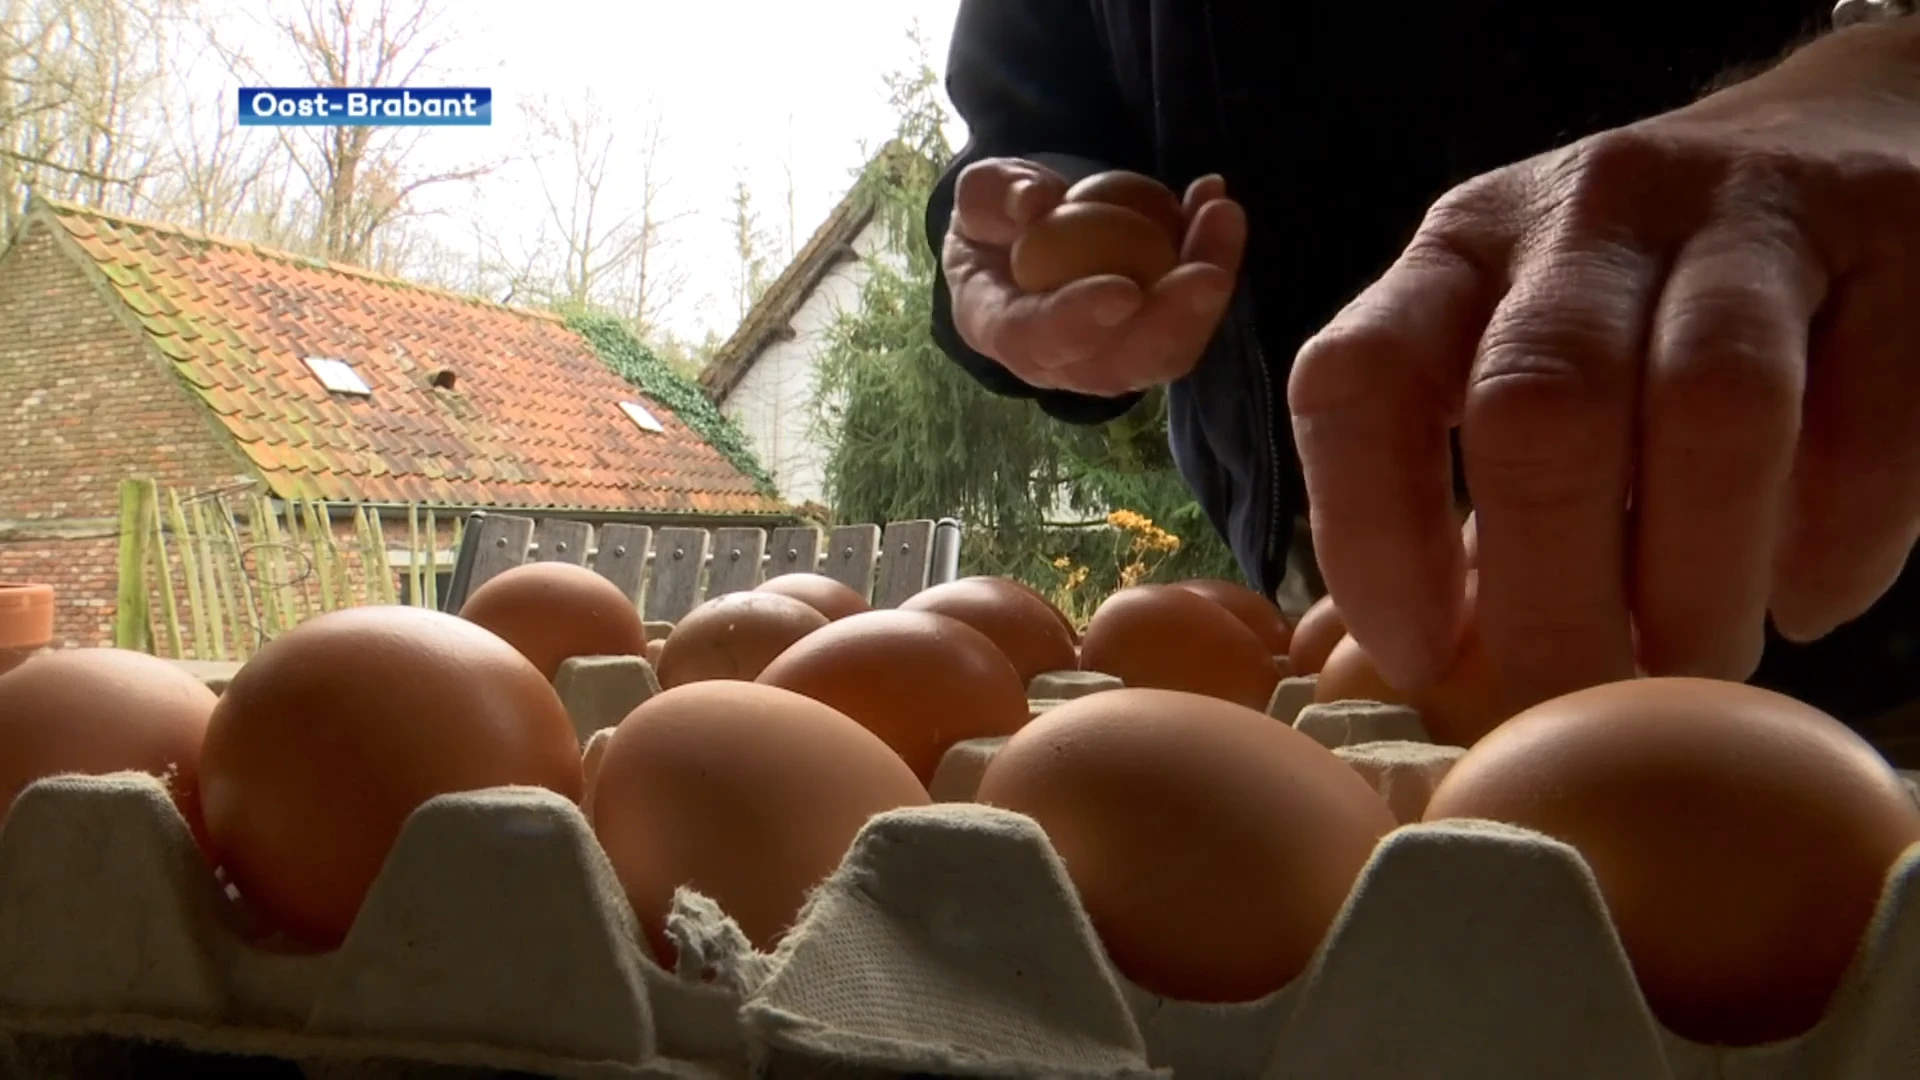 Toxicoloog Tytgat over nieuw PFAS-rapport: "4 tot 6 eieren per week van eigen kippen is geen probleem."